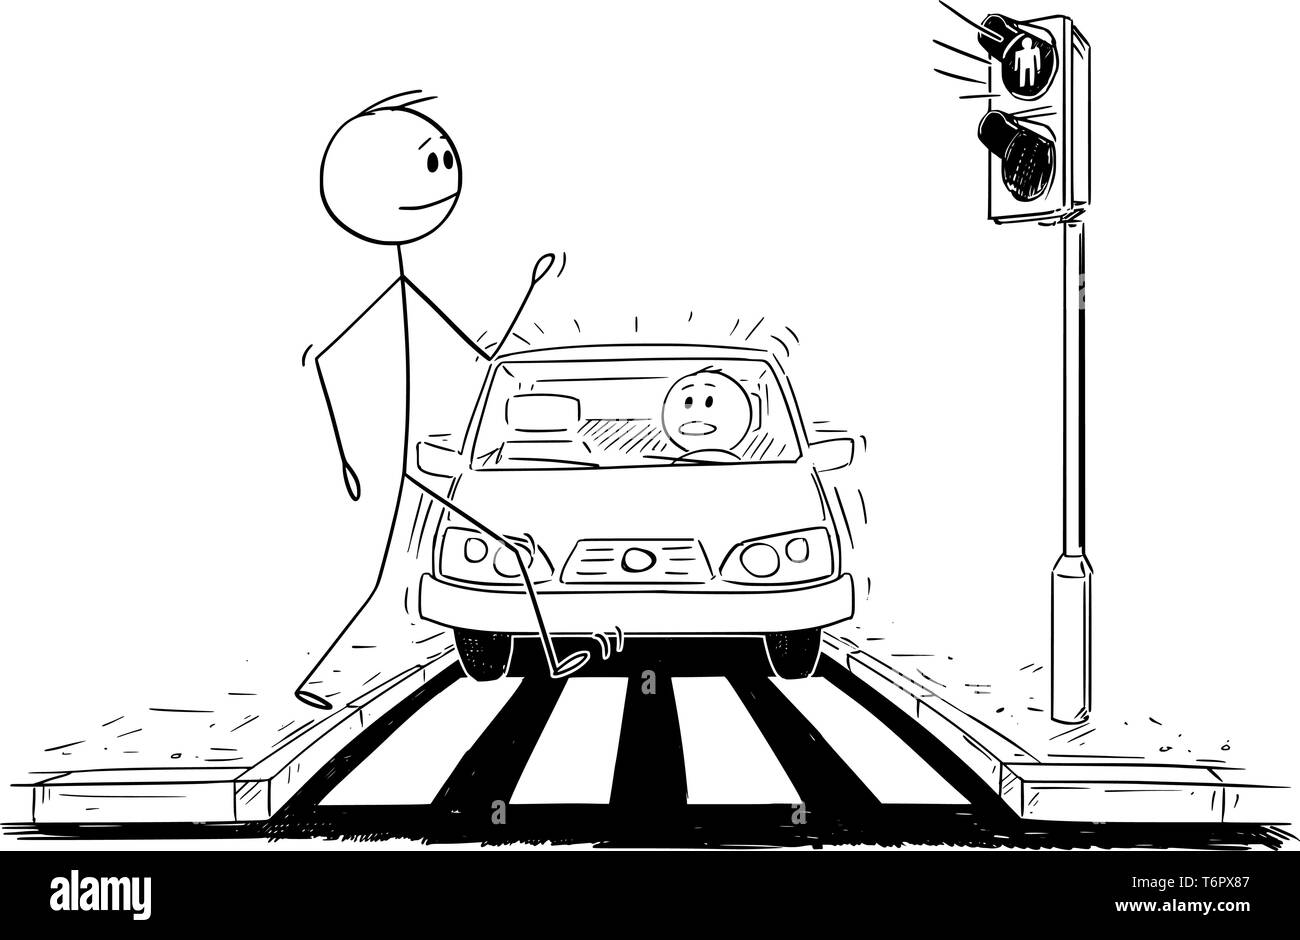 Cartoon stick figure dessin illustration conceptuelle de l'homme marche sur concordance ou passage piétons ignorant que le voyant rouge est allumé sur feux de voiture et se rapproche. Illustration de Vecteur